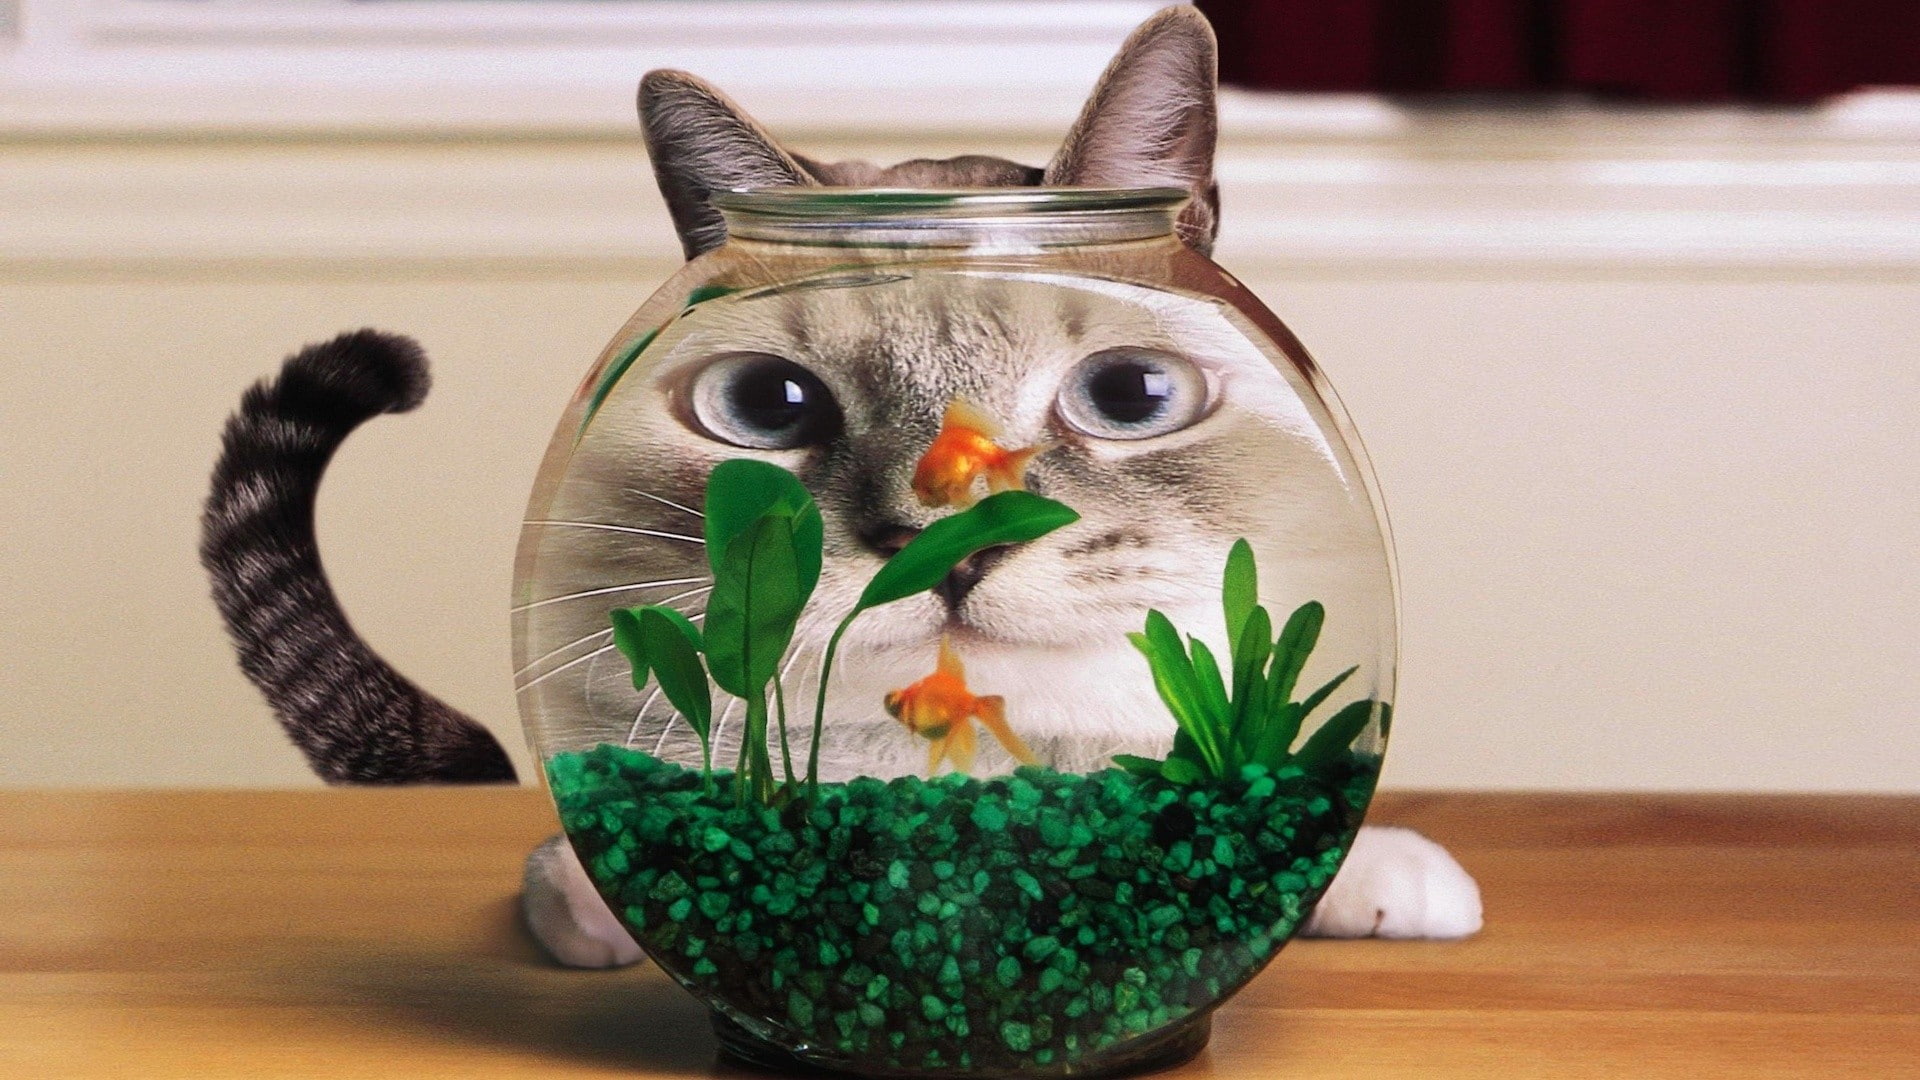 humor, cat, goldfish, aquarium, distortion